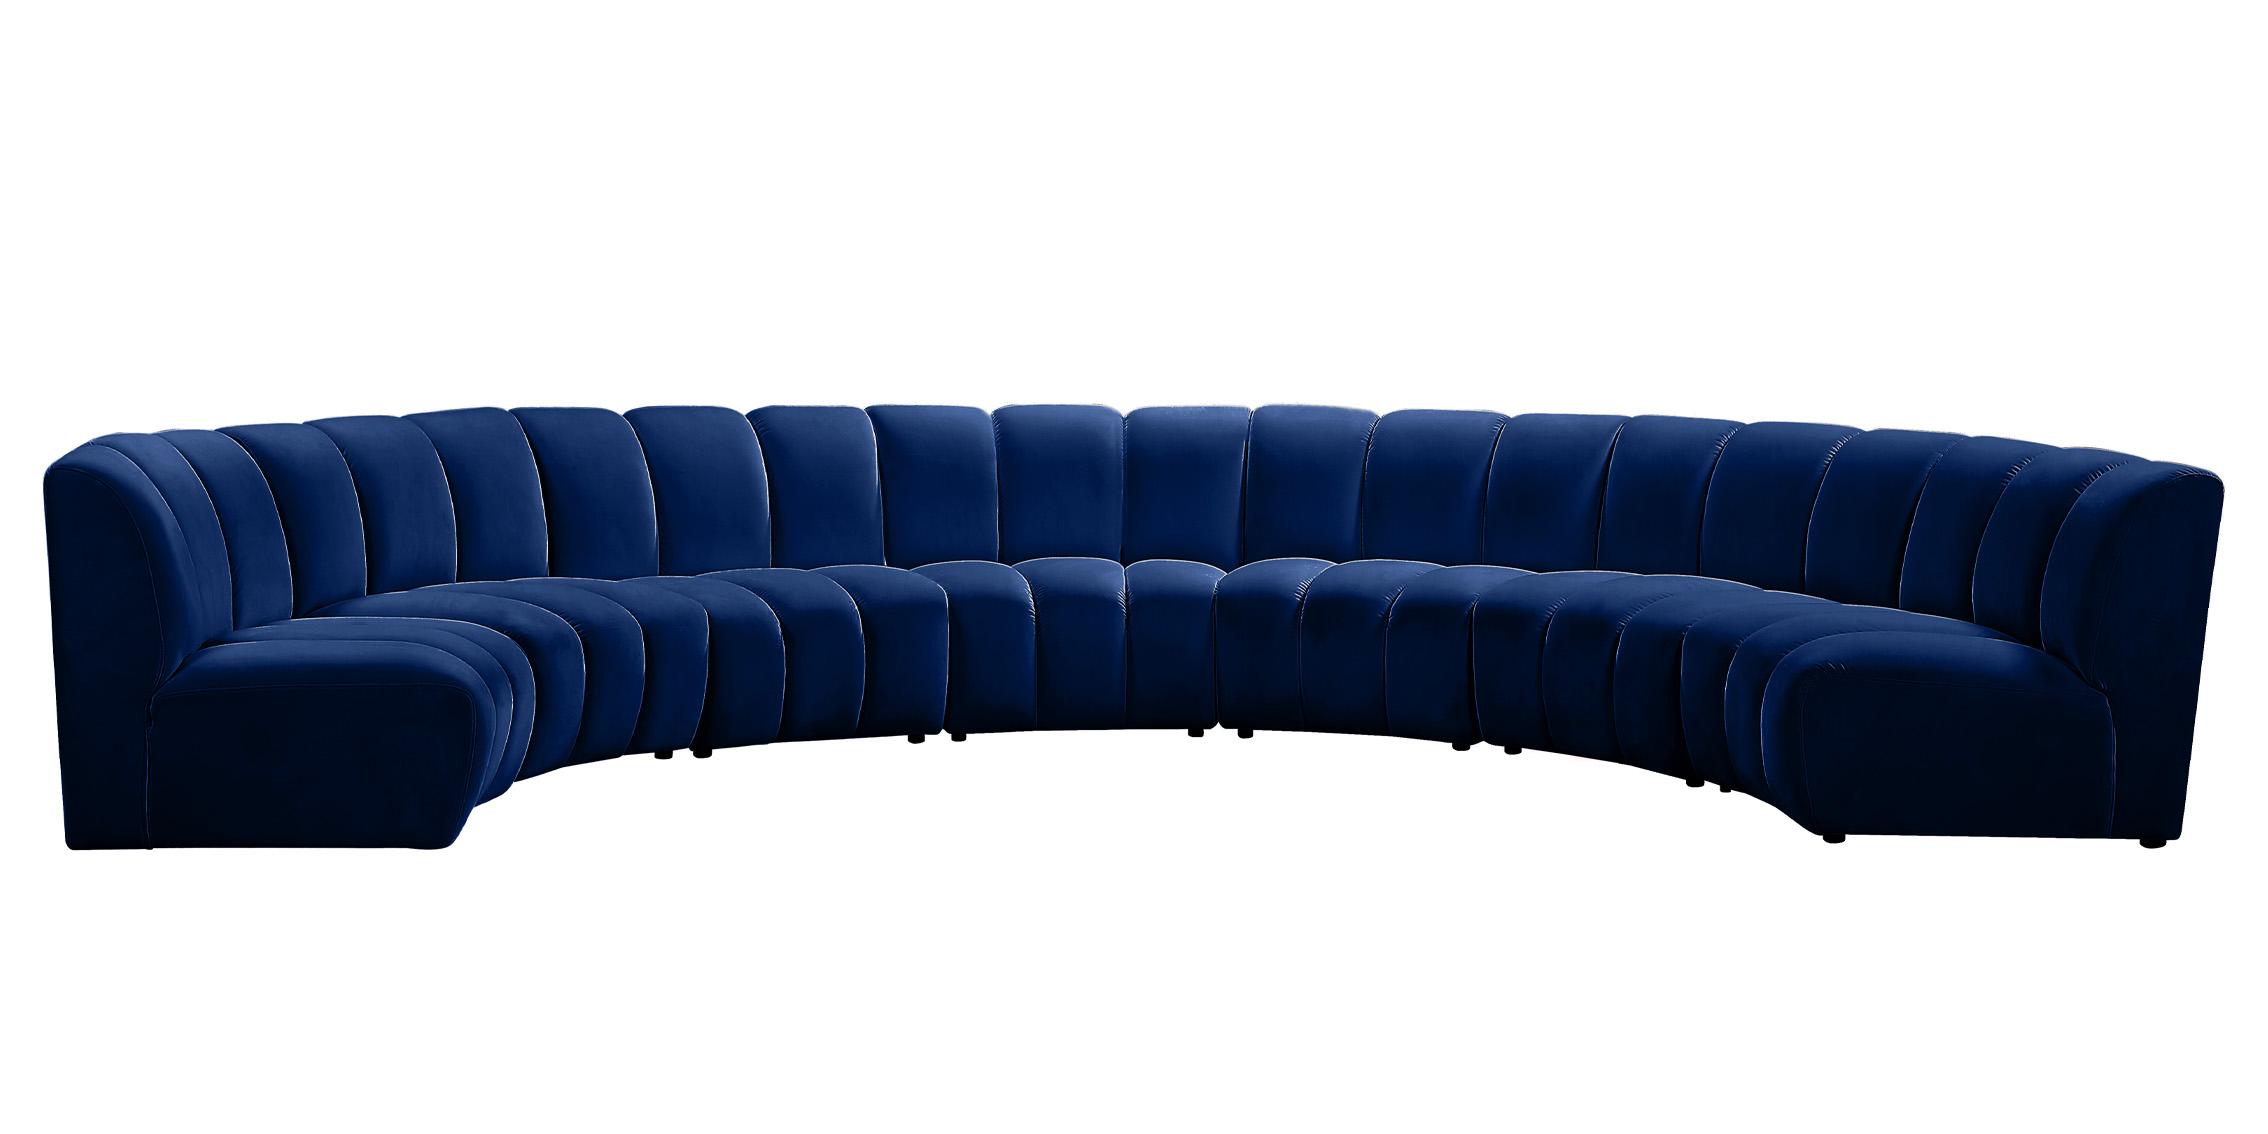 

    
638Navy-7PC Meridian Furniture Modular Sectional Sofa
